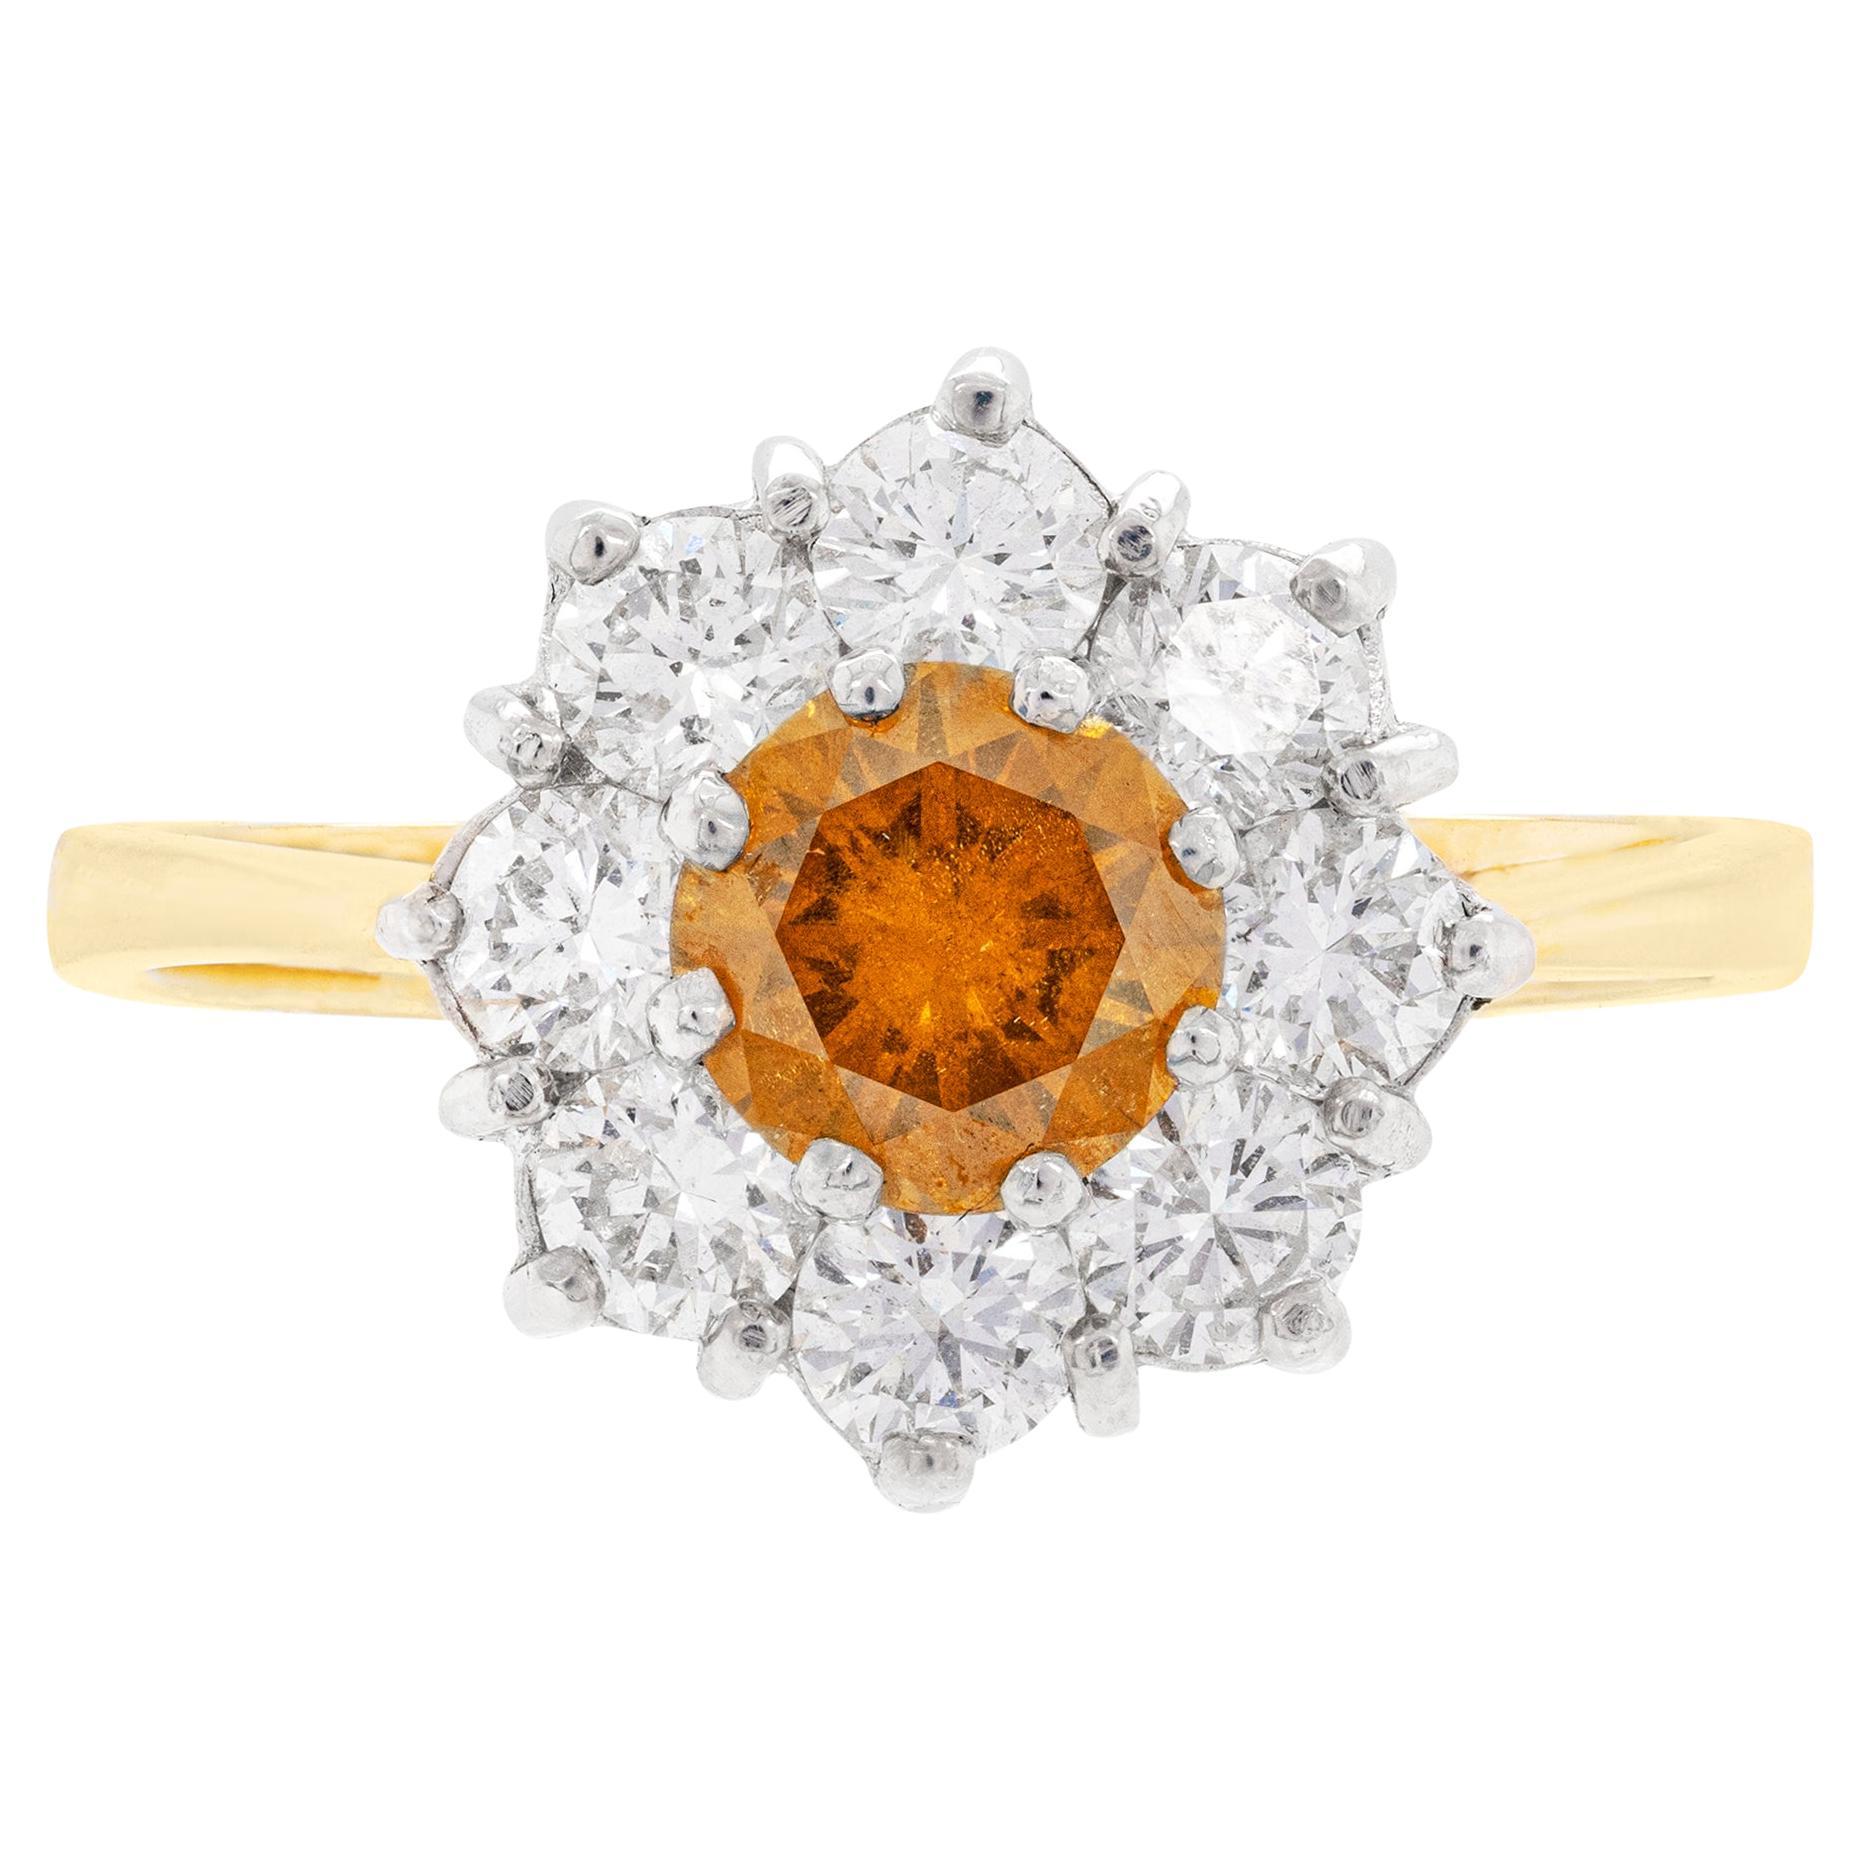 Bague de fiançailles en or 18 carats avec diamants naturels orange-jaune foncé de fantaisie